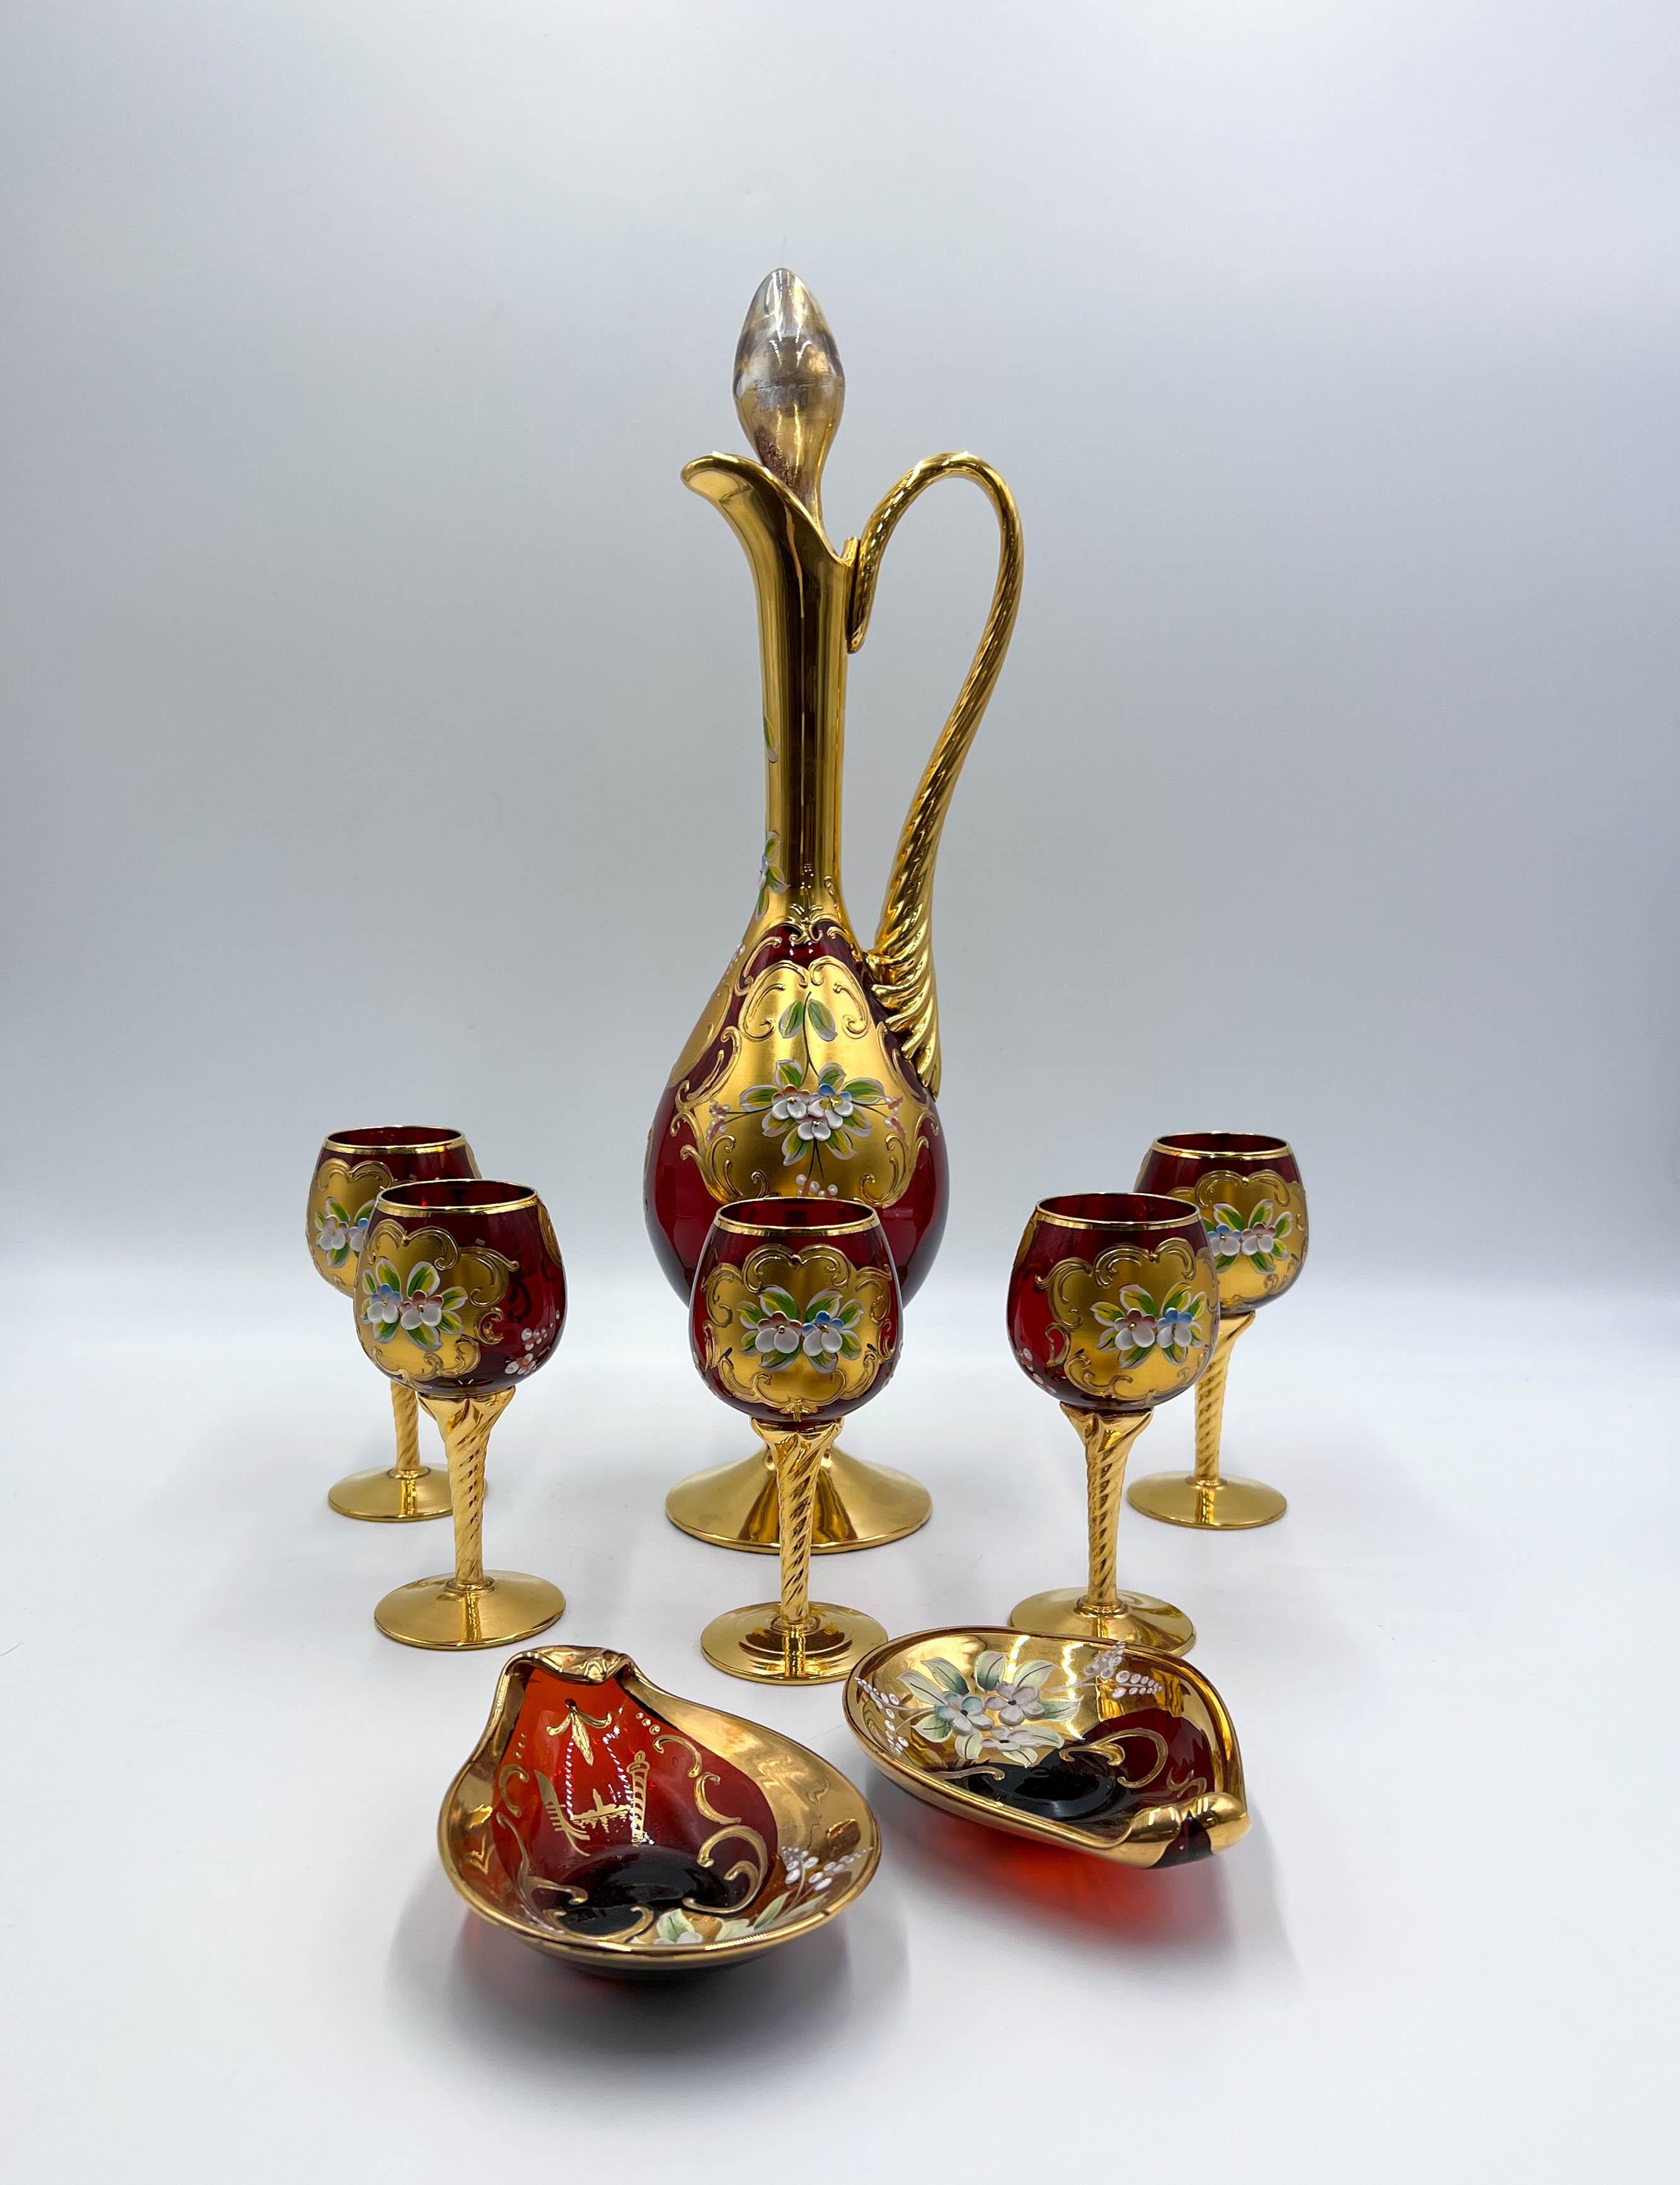 Dieses Set aus italienisch-venezianischem, mundgeblasenem Murano-Kunstglas von Tre Fuochi ist ein wahres Zeugnis der Kunstfertigkeit und Handwerkskunst der alten venezianischen Tradition. Dieses exquisite, mit viel Liebe zum Detail gefertigte Set